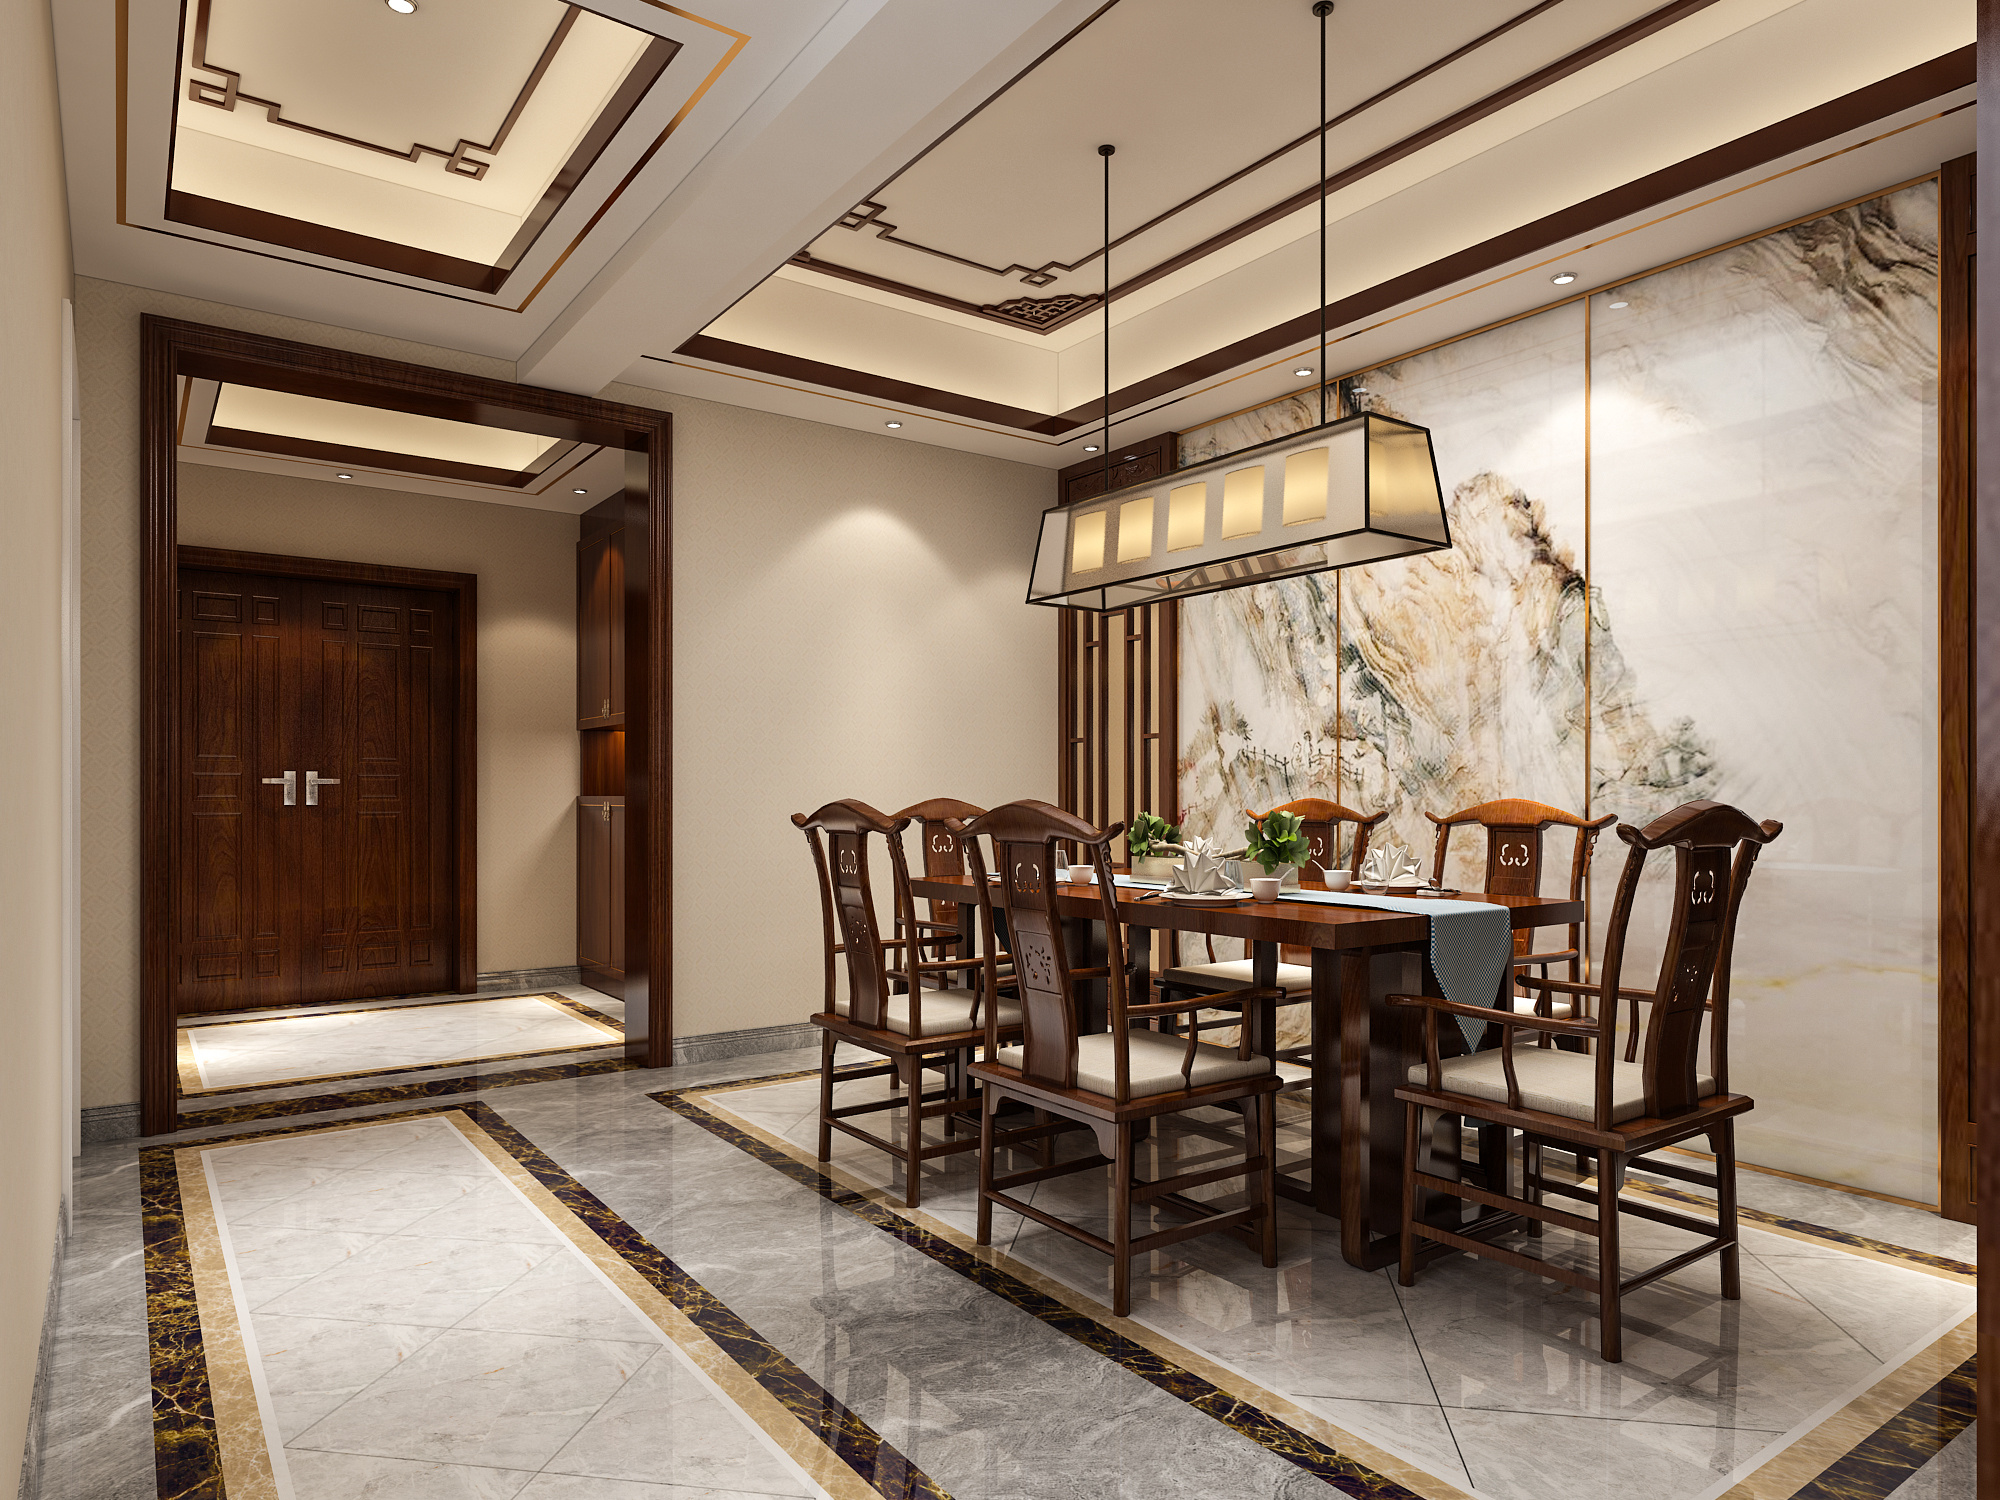 新古典主义中式餐厅家具效果图 – 设计本装修效果图